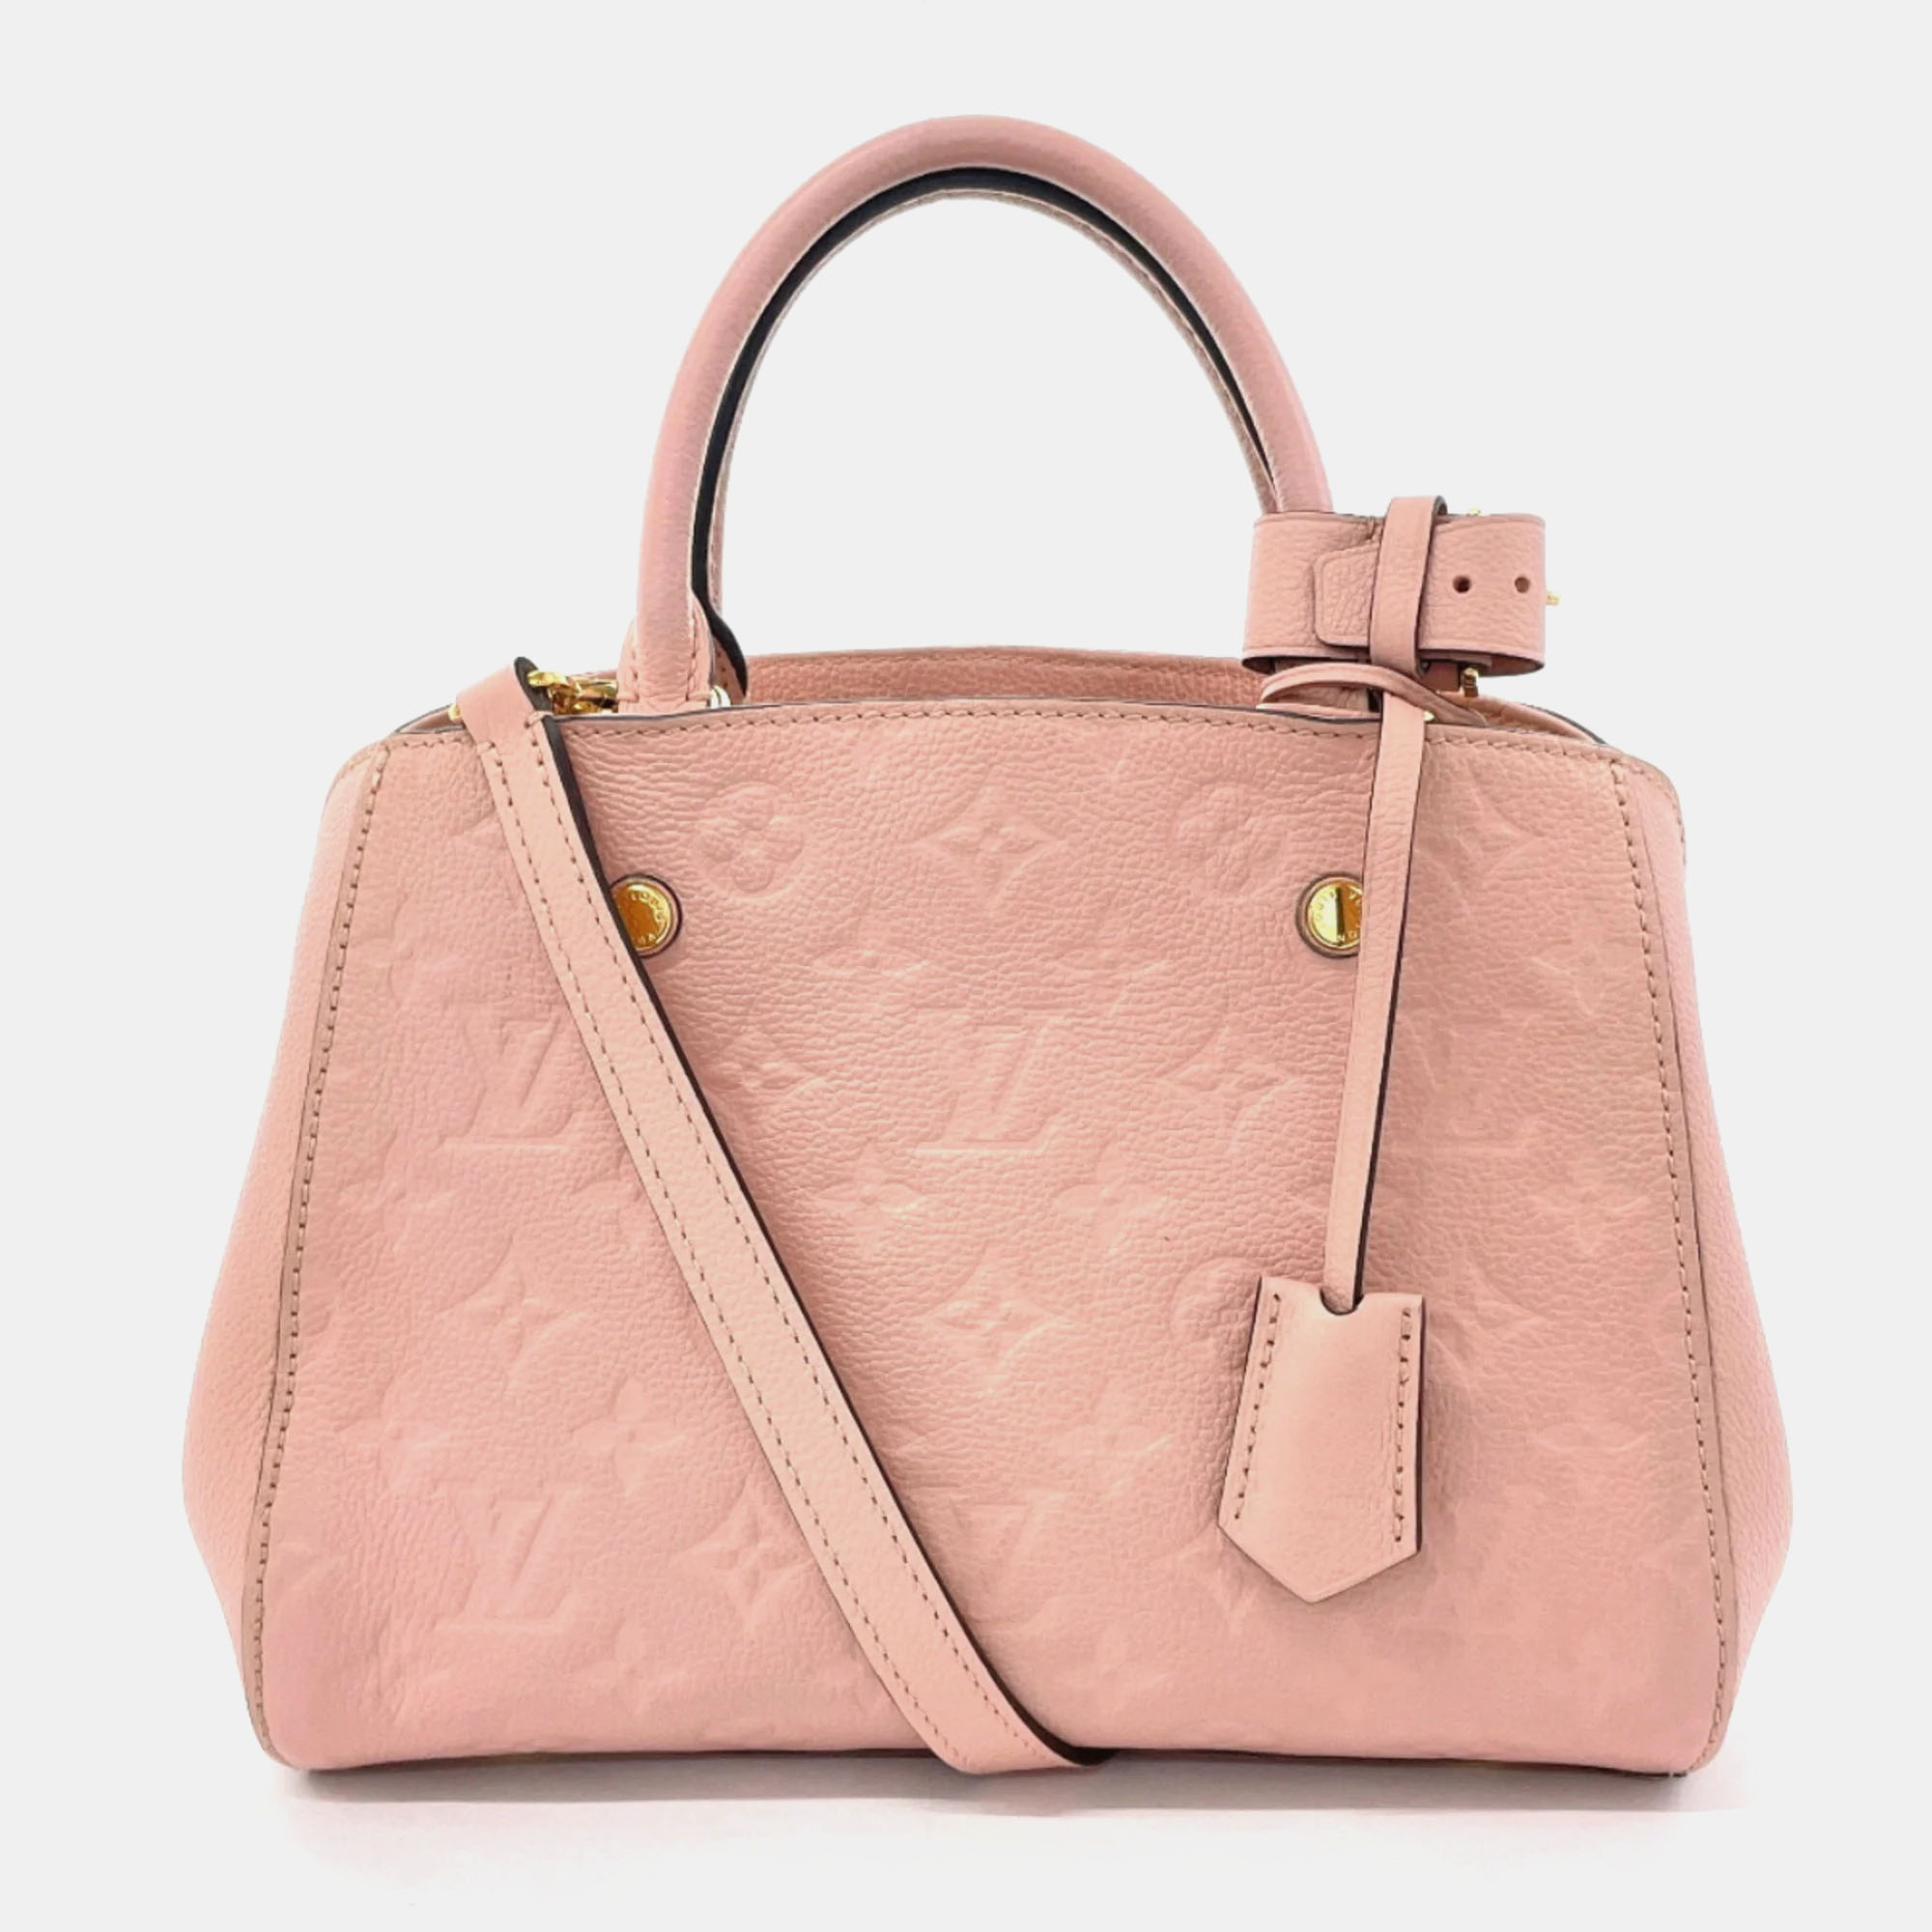 Louis vuitton pink leather bb montaigne satchel bag